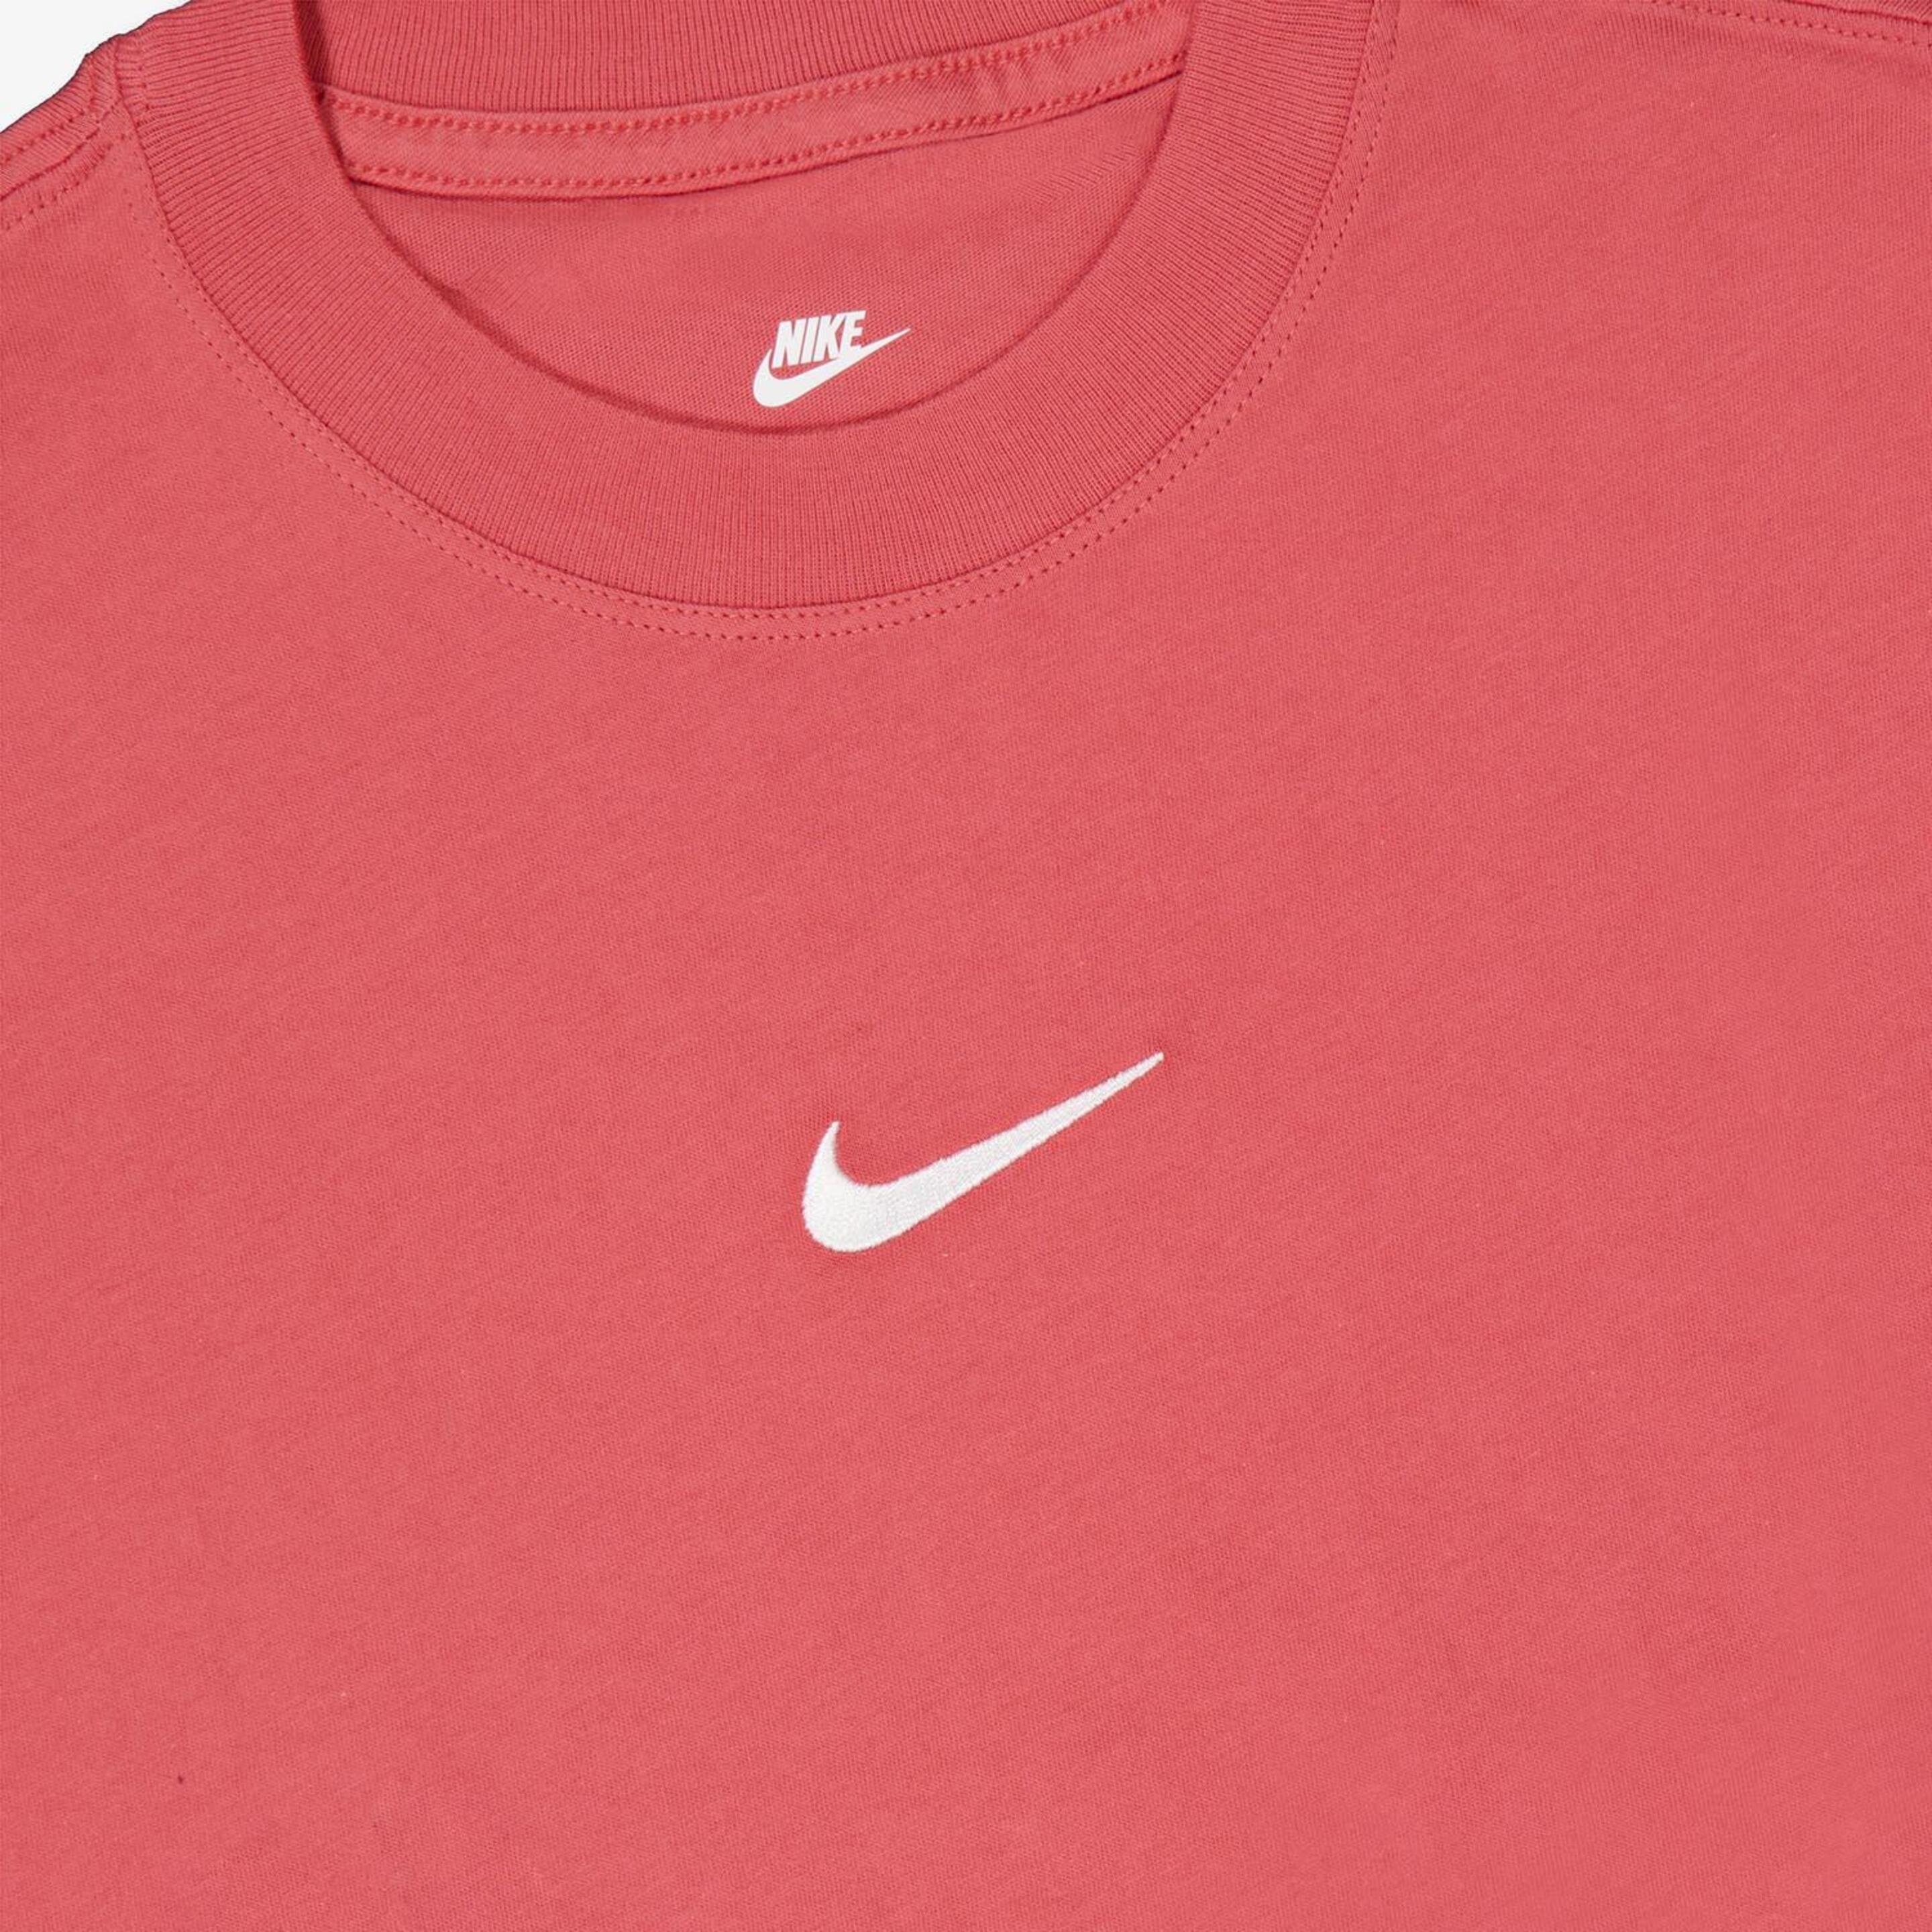 Camiseta Nike